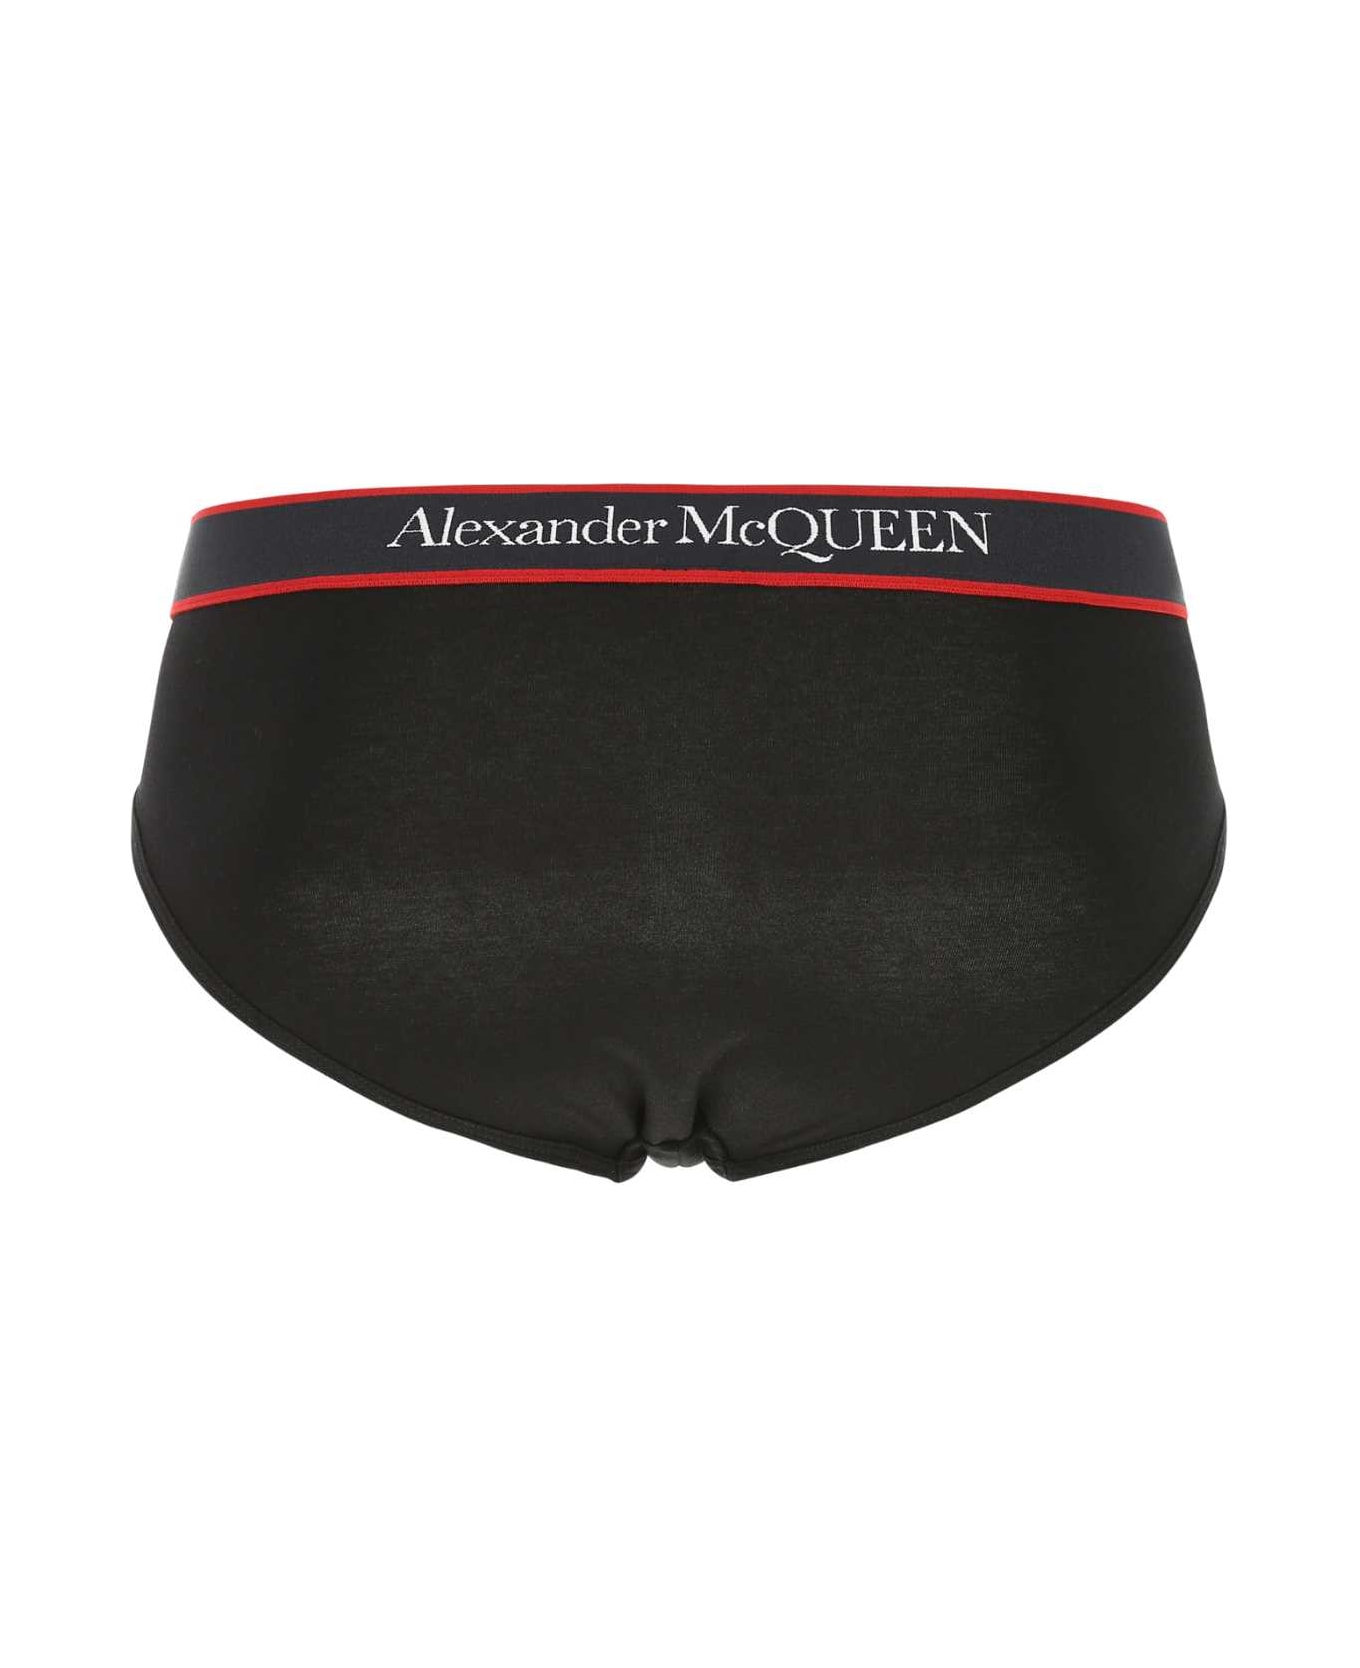 Alexander McQueen Black Stretch Cotton Slip - 1000